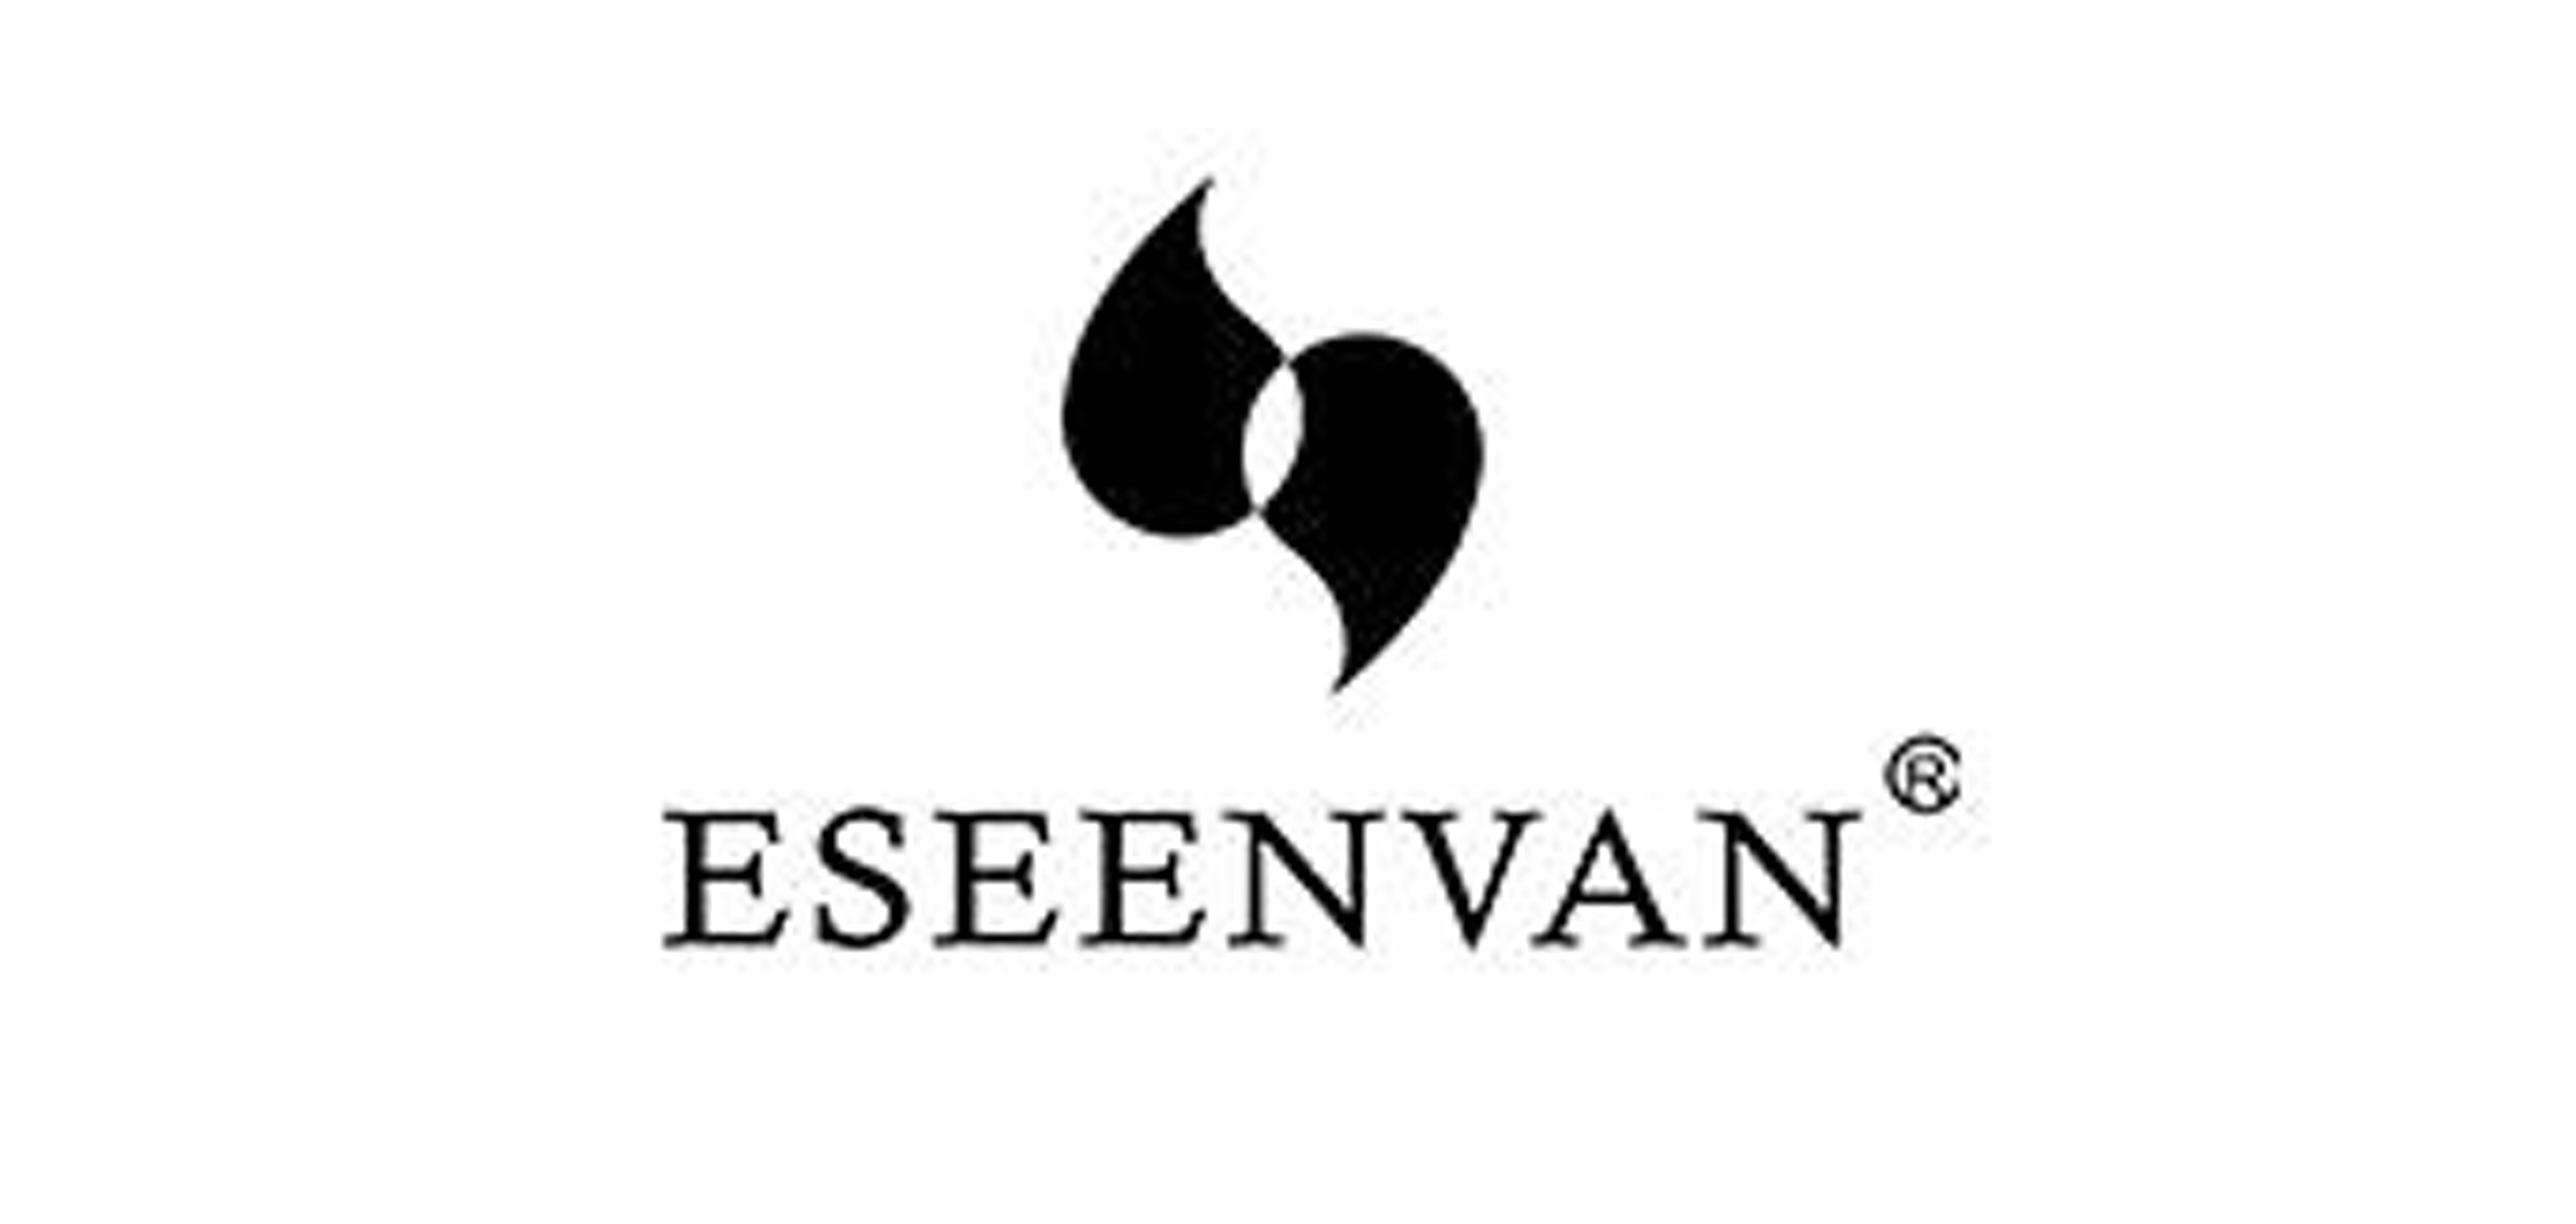 eseenvan是什么牌子_伊思梵品牌怎么样?